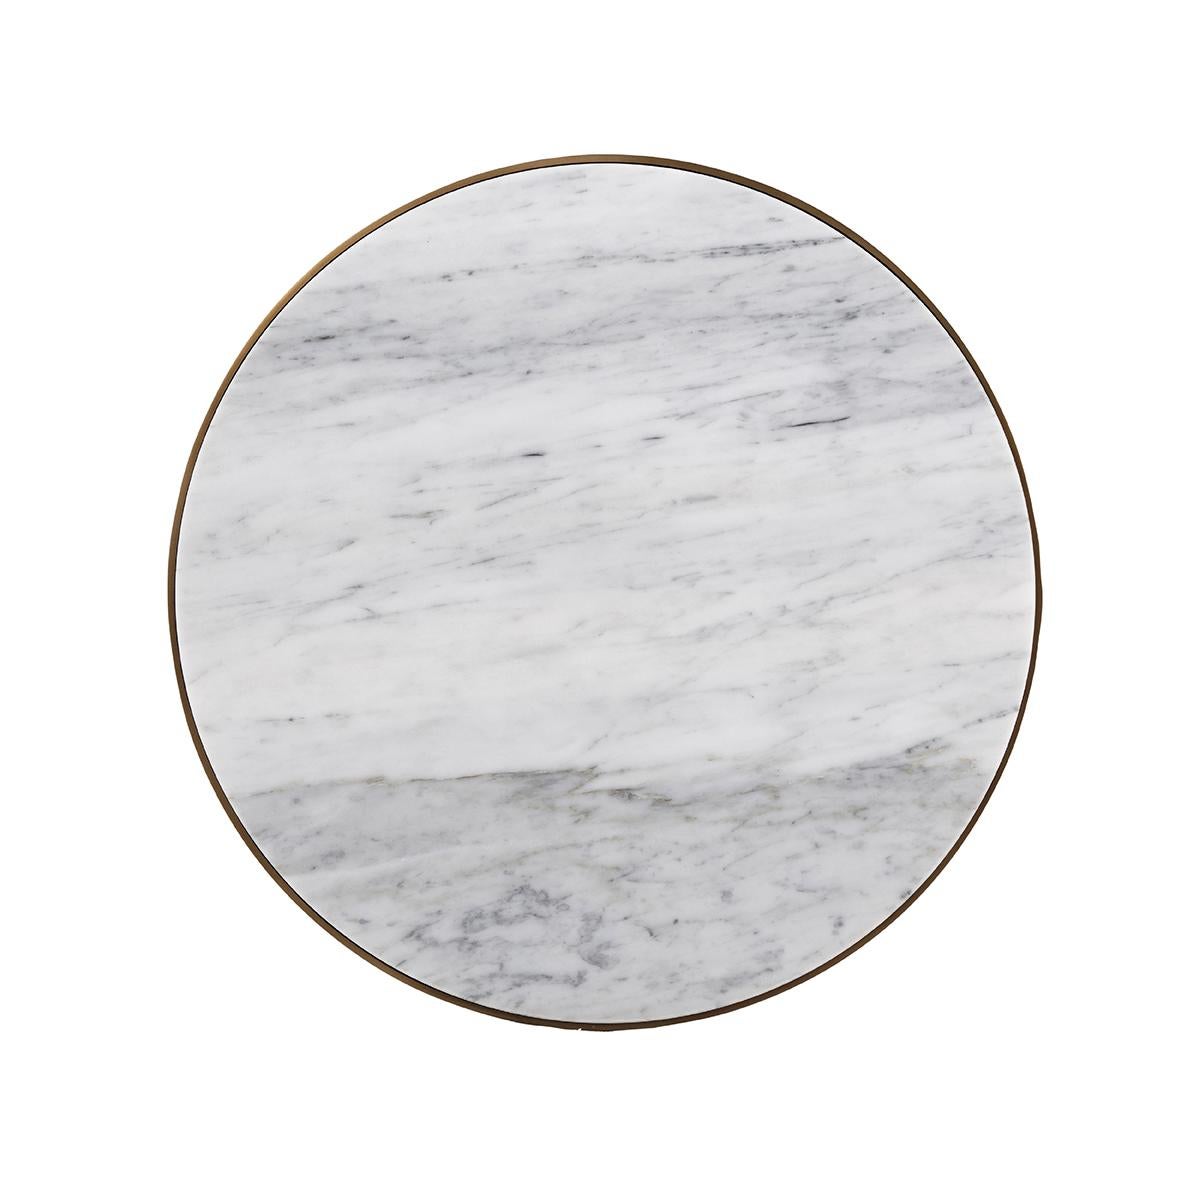 Mit einer runden Platte aus Bianco Carraro-Marmor auf einem Metallsockel aus gebürstetem Messing mit spitz zulaufenden Beinen.

Abmessungen: 19,75